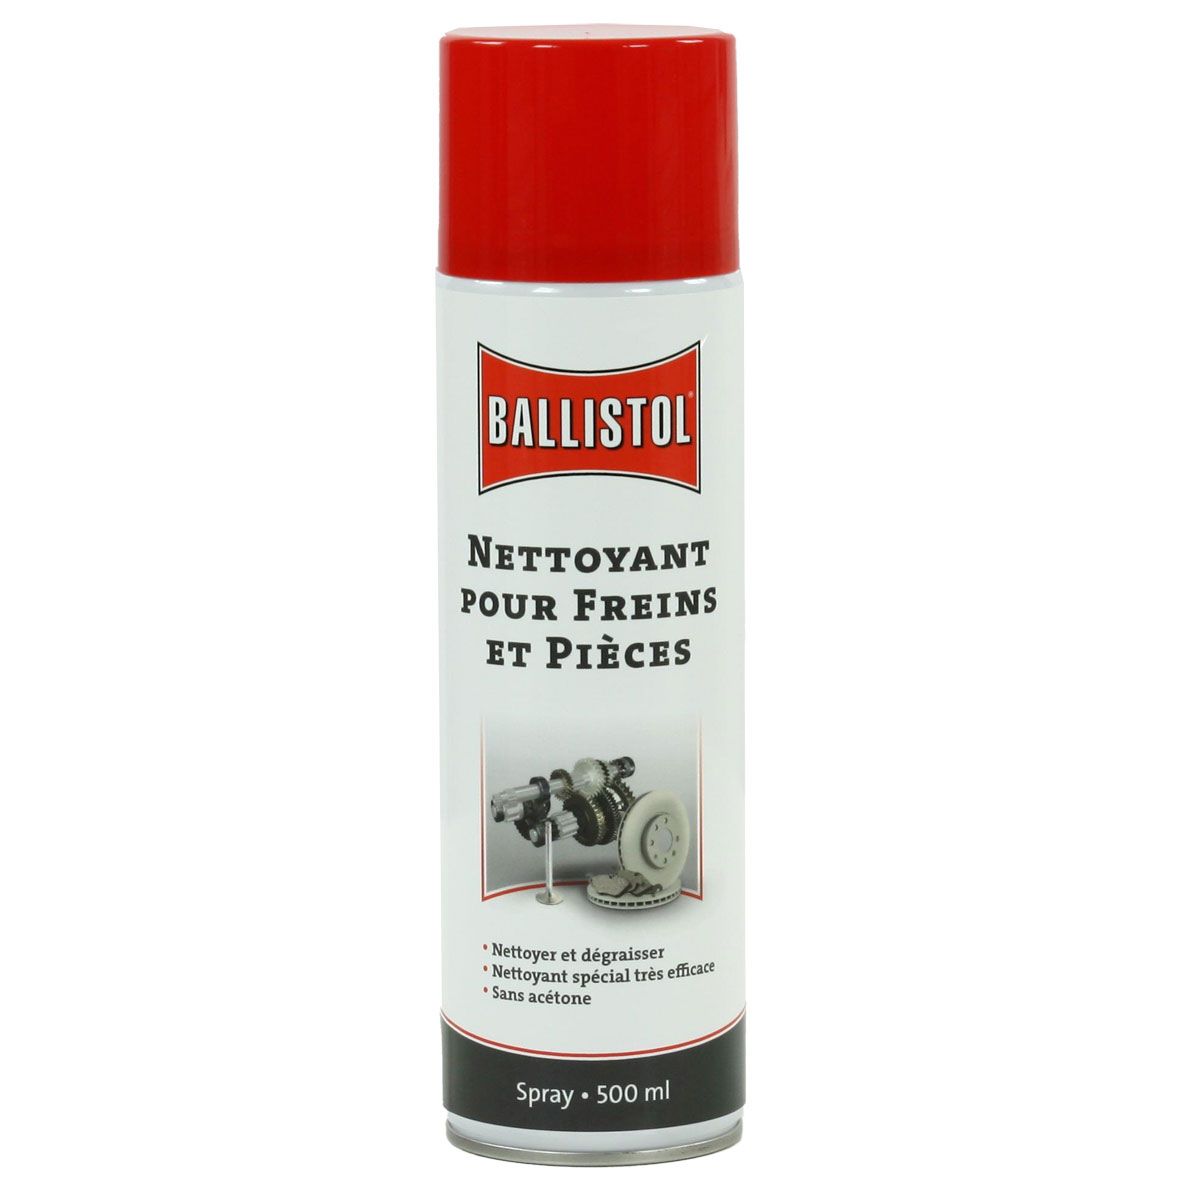 Spray Nettoyant pour freins BALLISTOL 500 ml